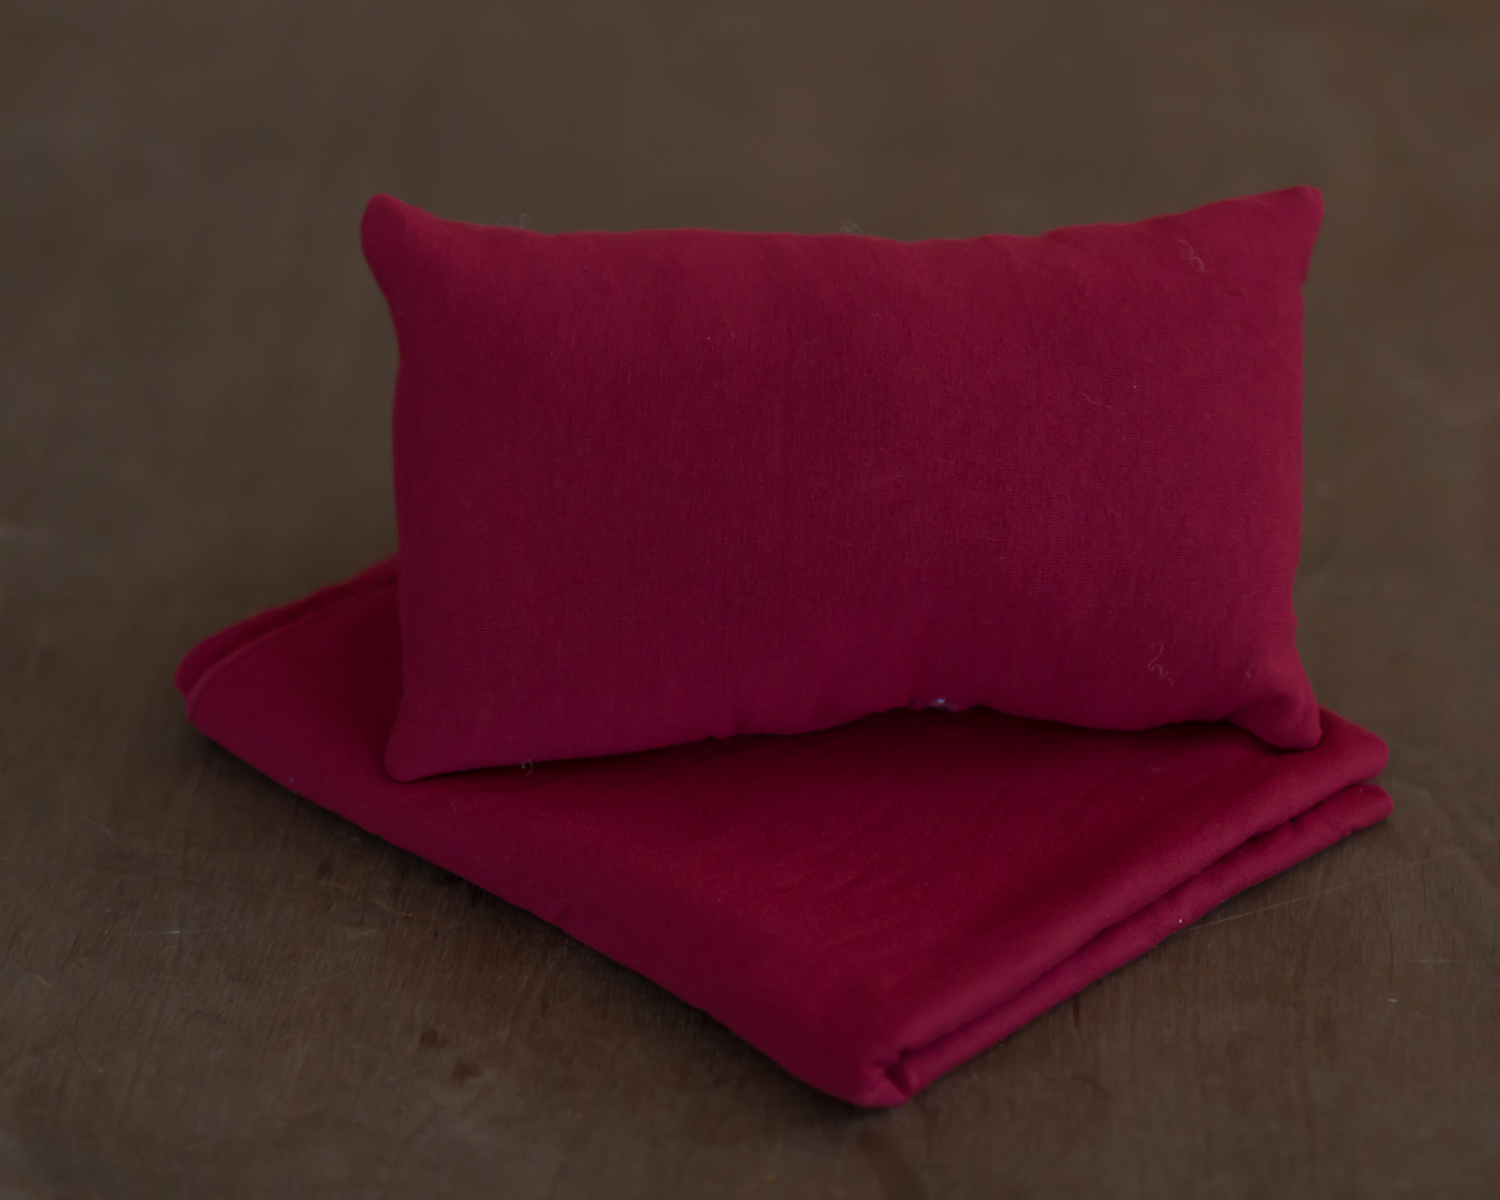 Mat red posing pillow - newborn photo prop